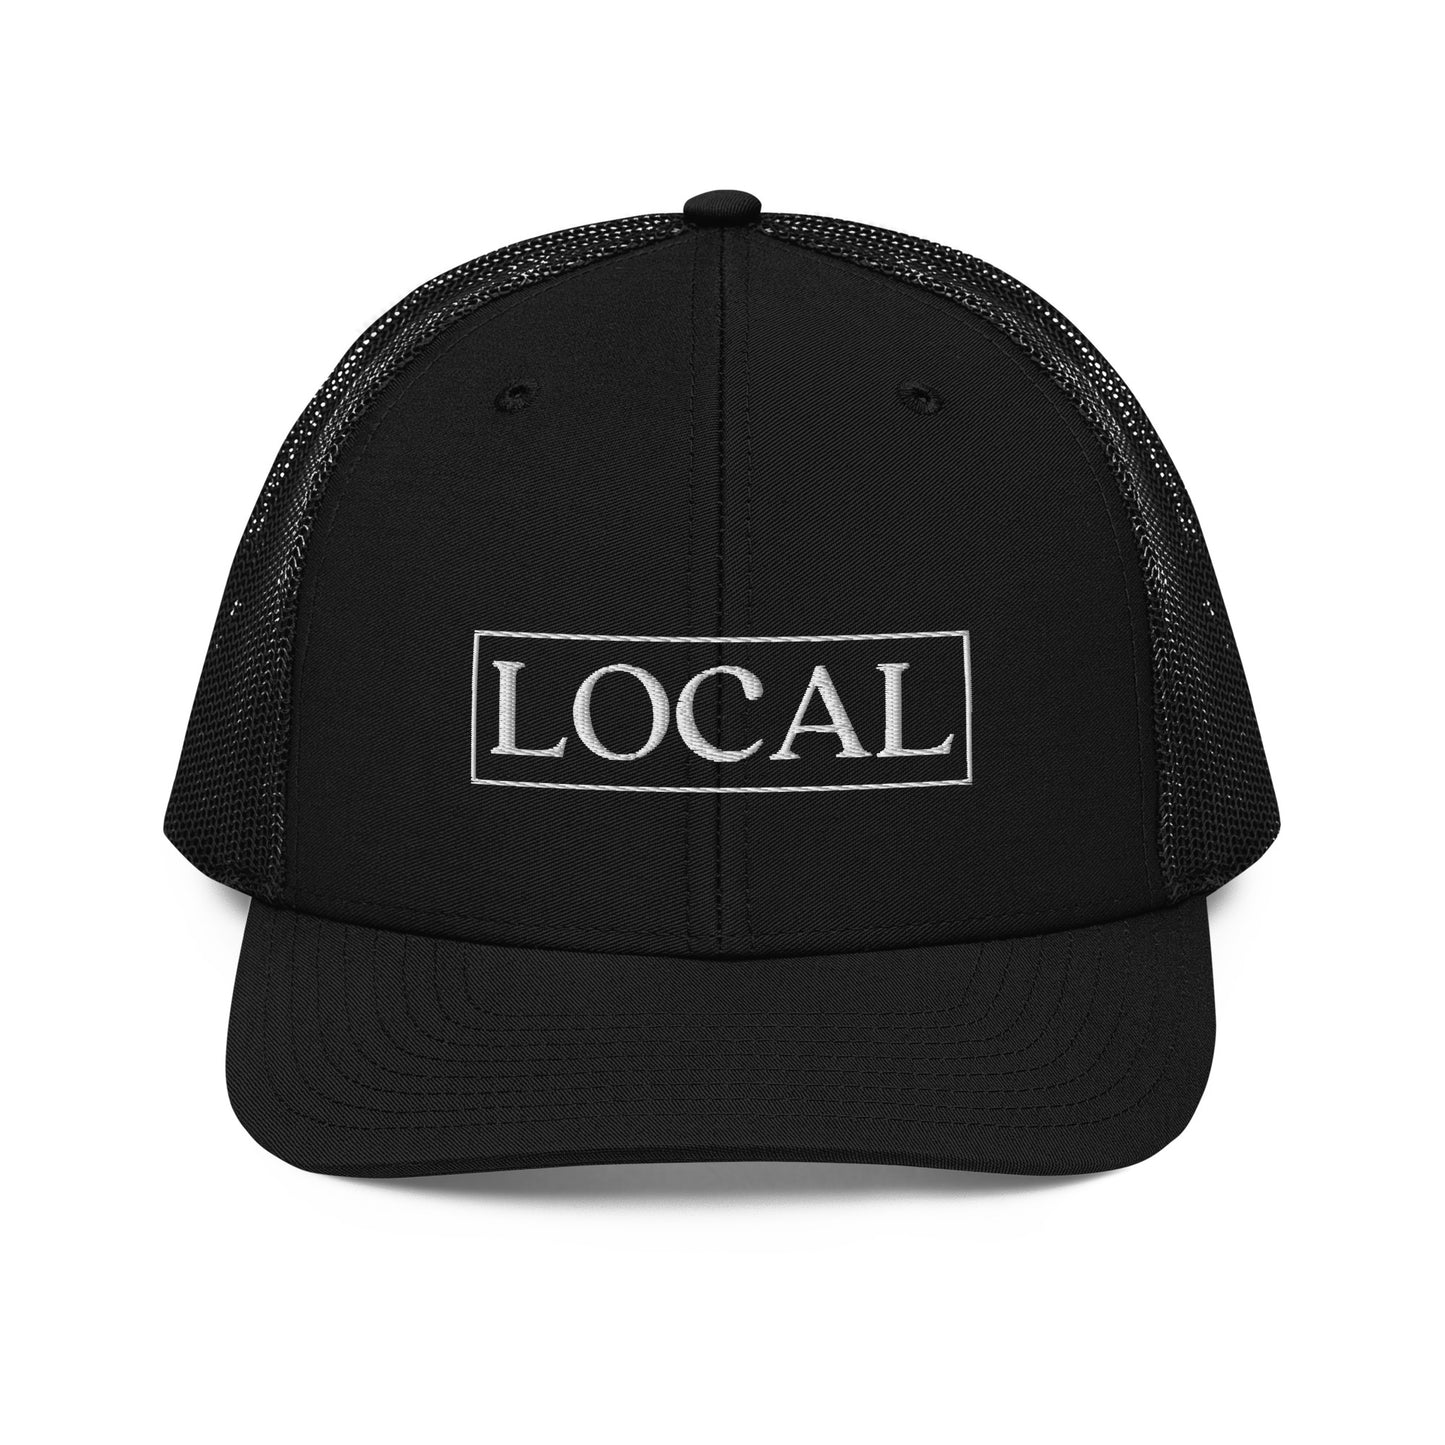 Local Florida Hat - Black